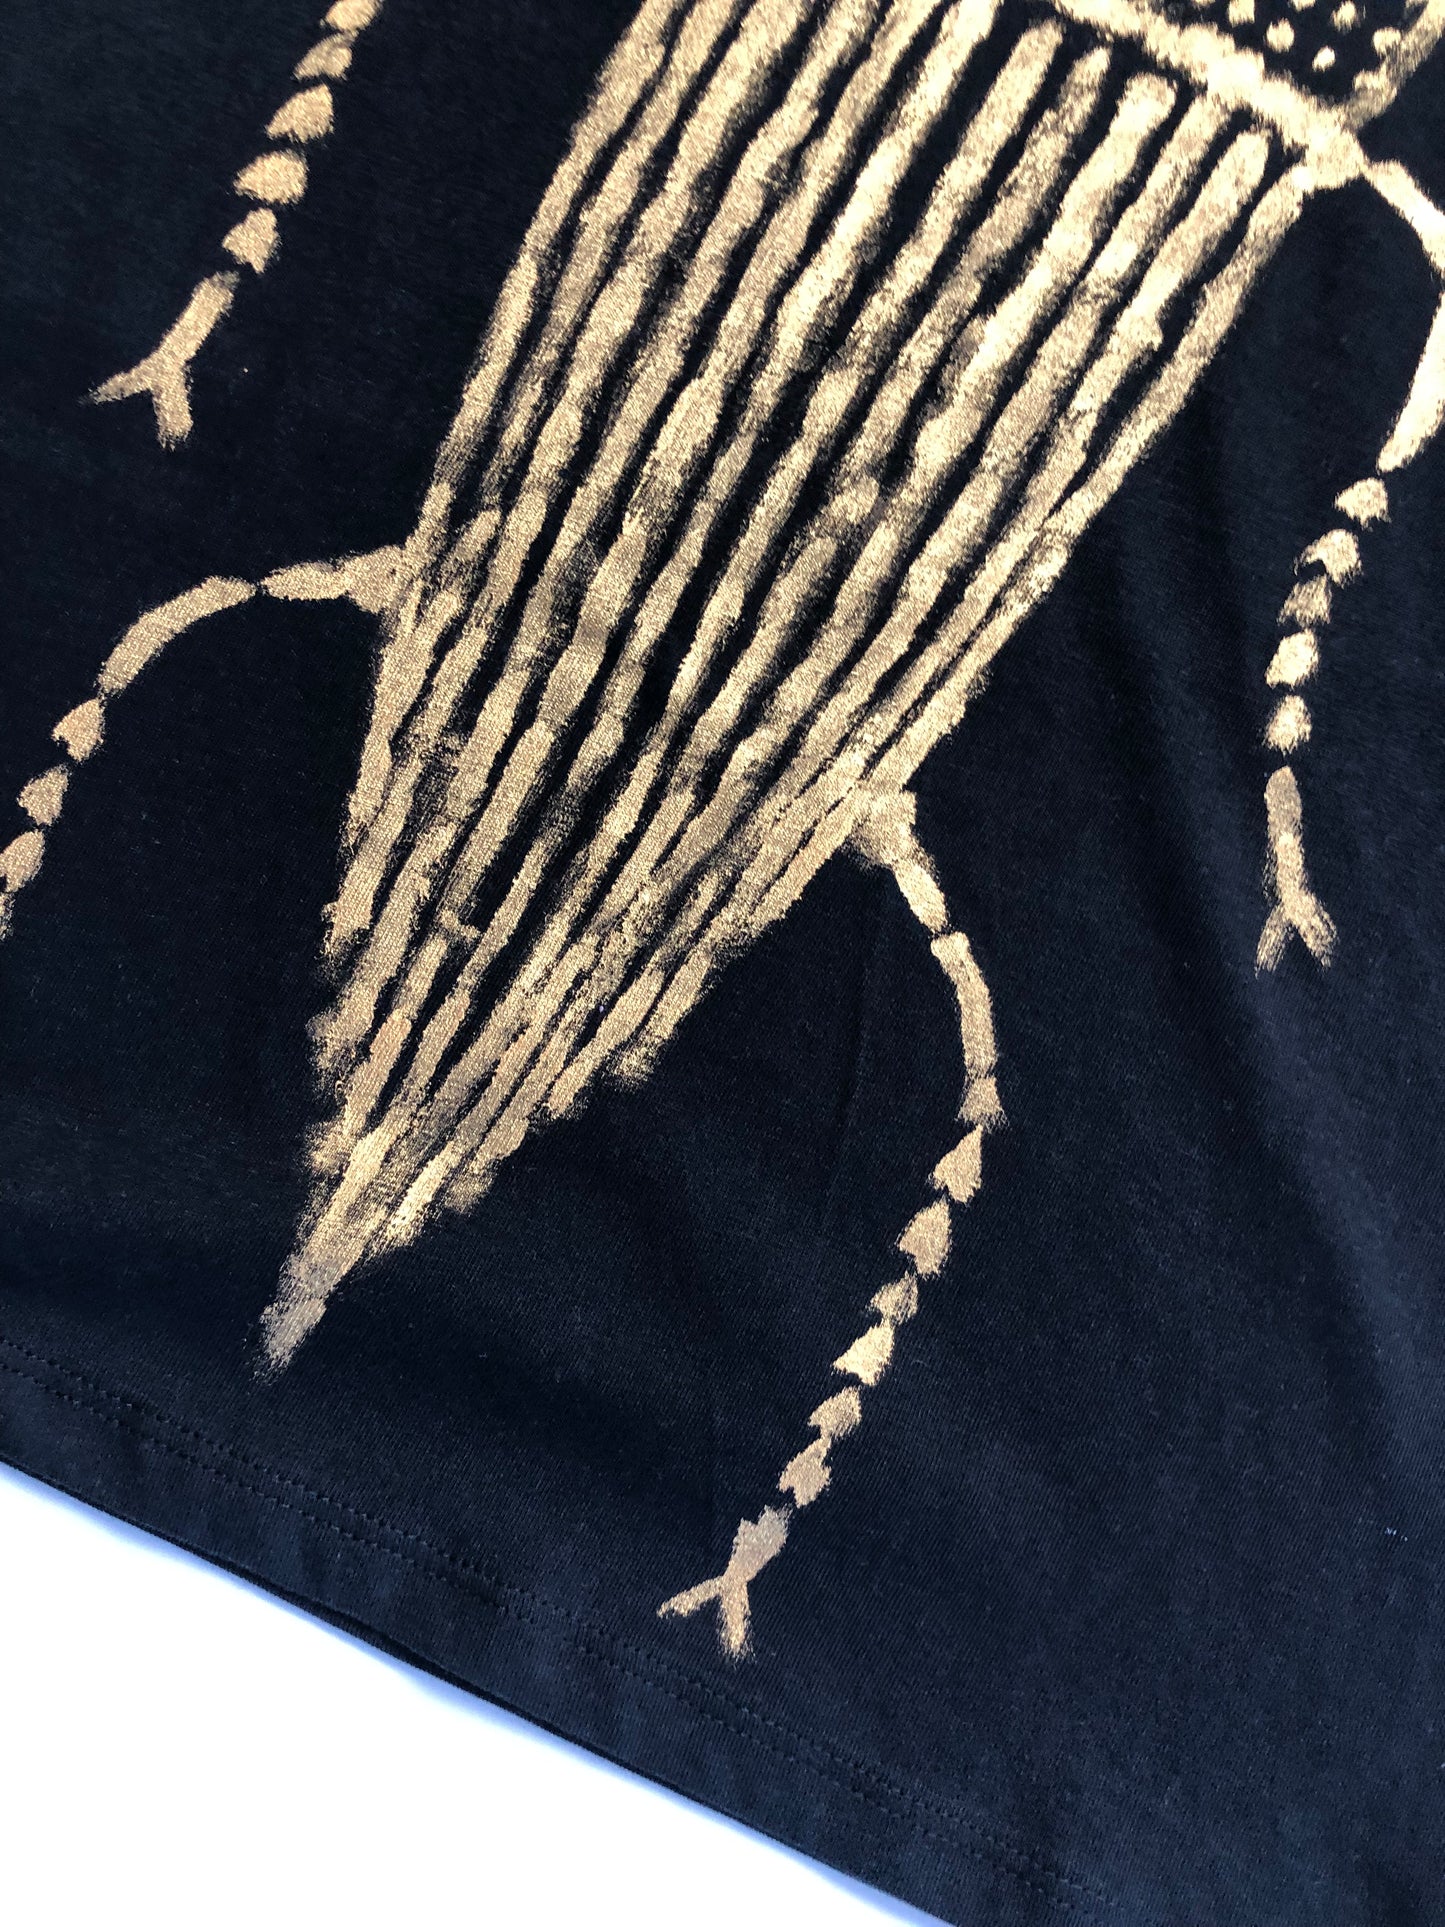 Women's short sleeve t-shirt pattern details gold cockroach